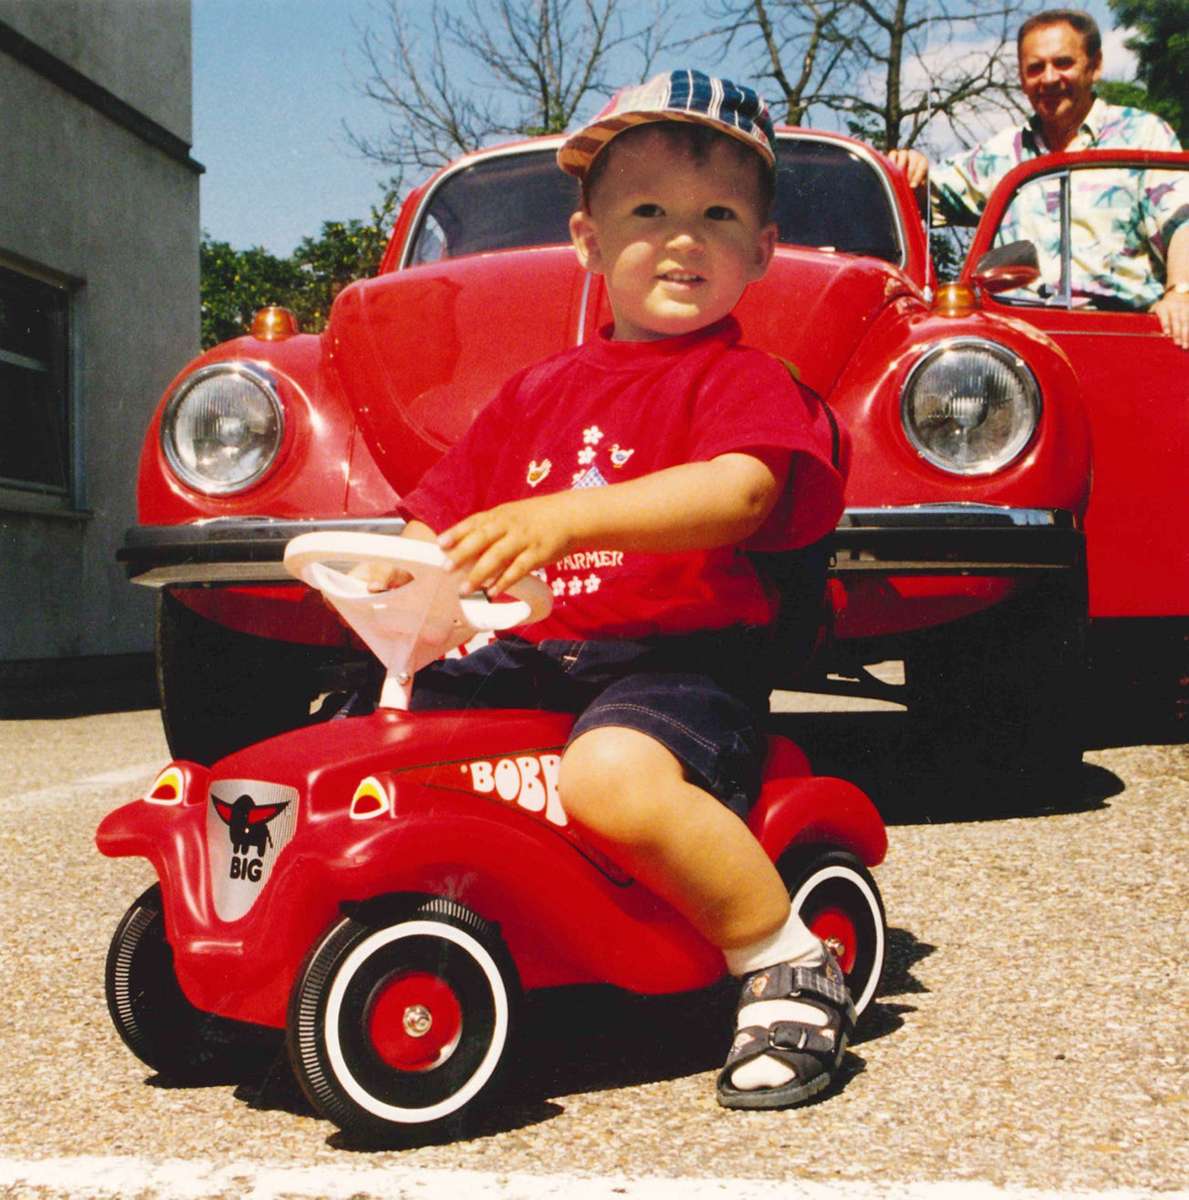 Kinder lieben das kleine rote Rutschauto namens Bobbycar. Seit 50 Jahren läuft es bei der Firma Big in Bayern vom Band.